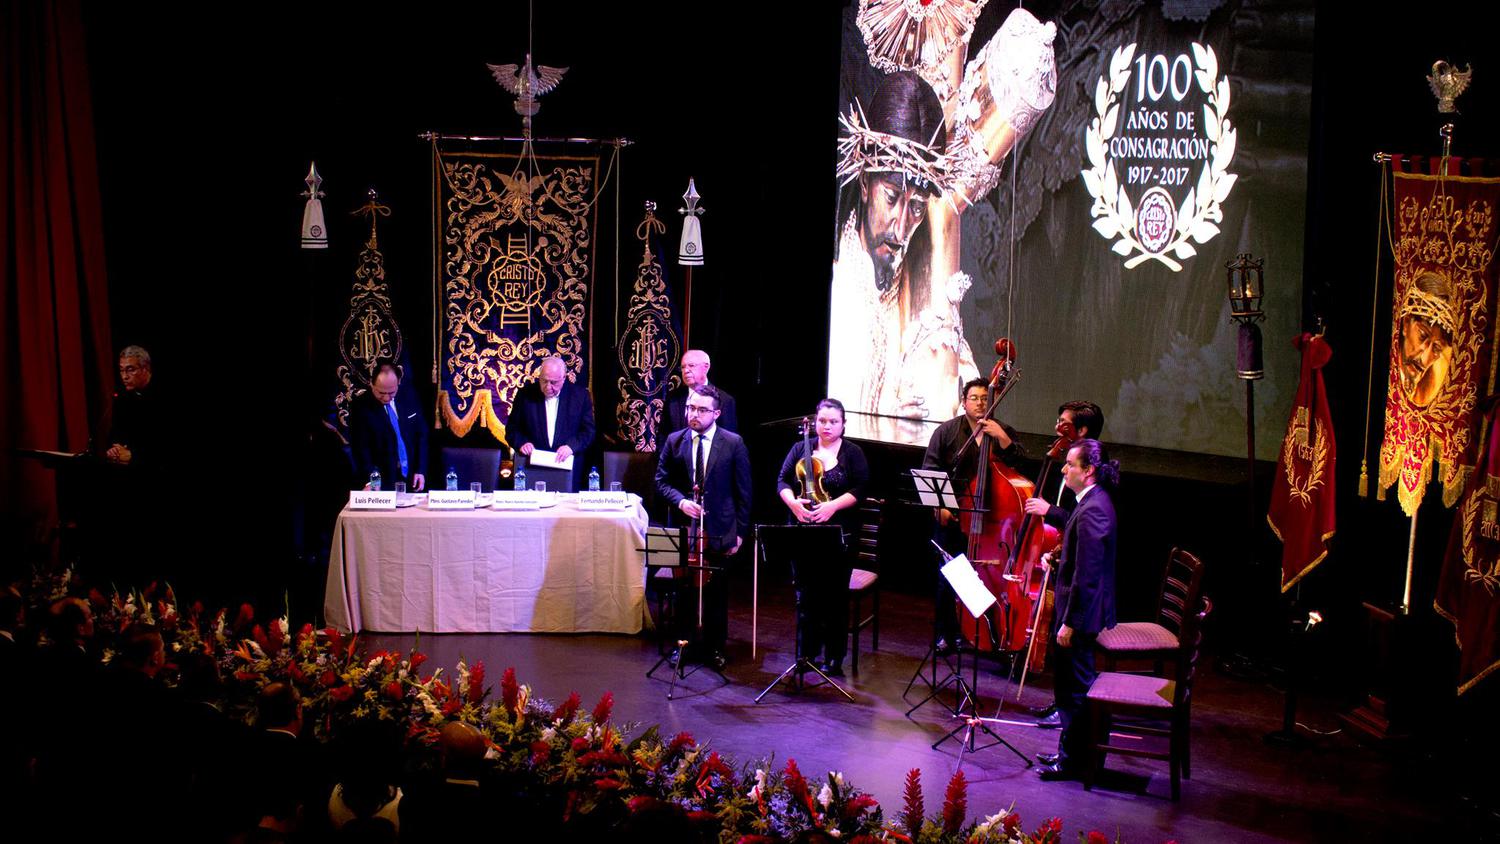 Presentacion centenario de consagracion Jesús de Candelaria (2)